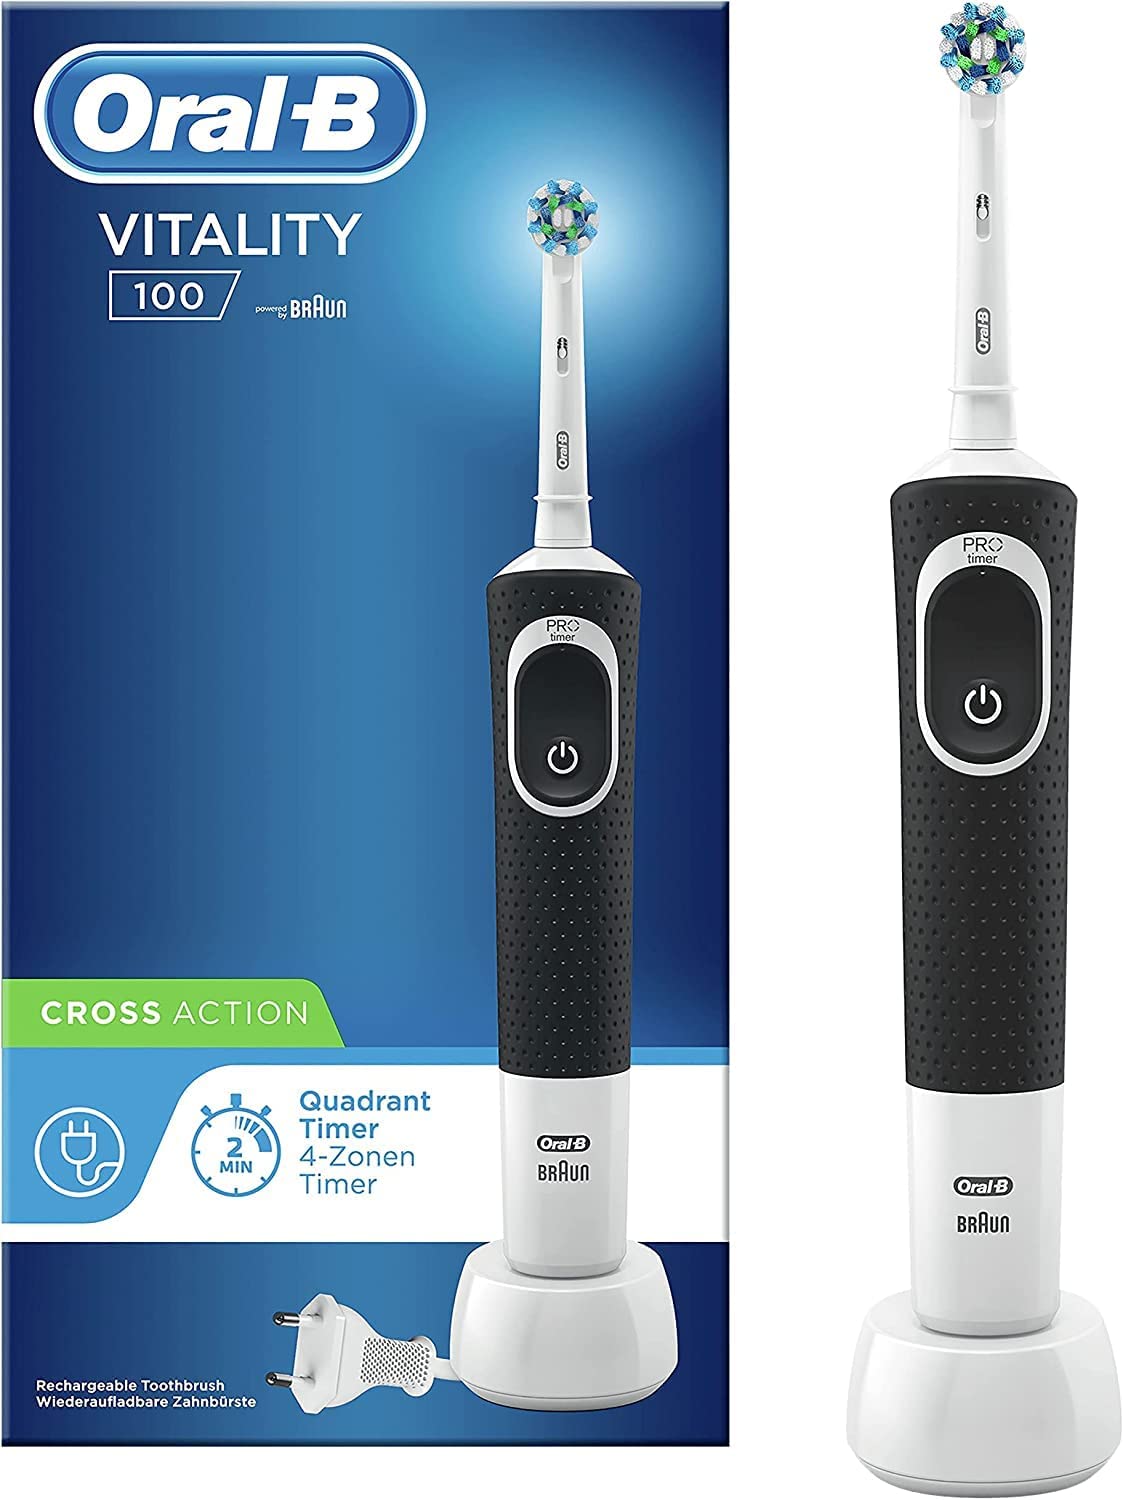 Oral-B Vitality 100 vs Oral-B Vitality Pro